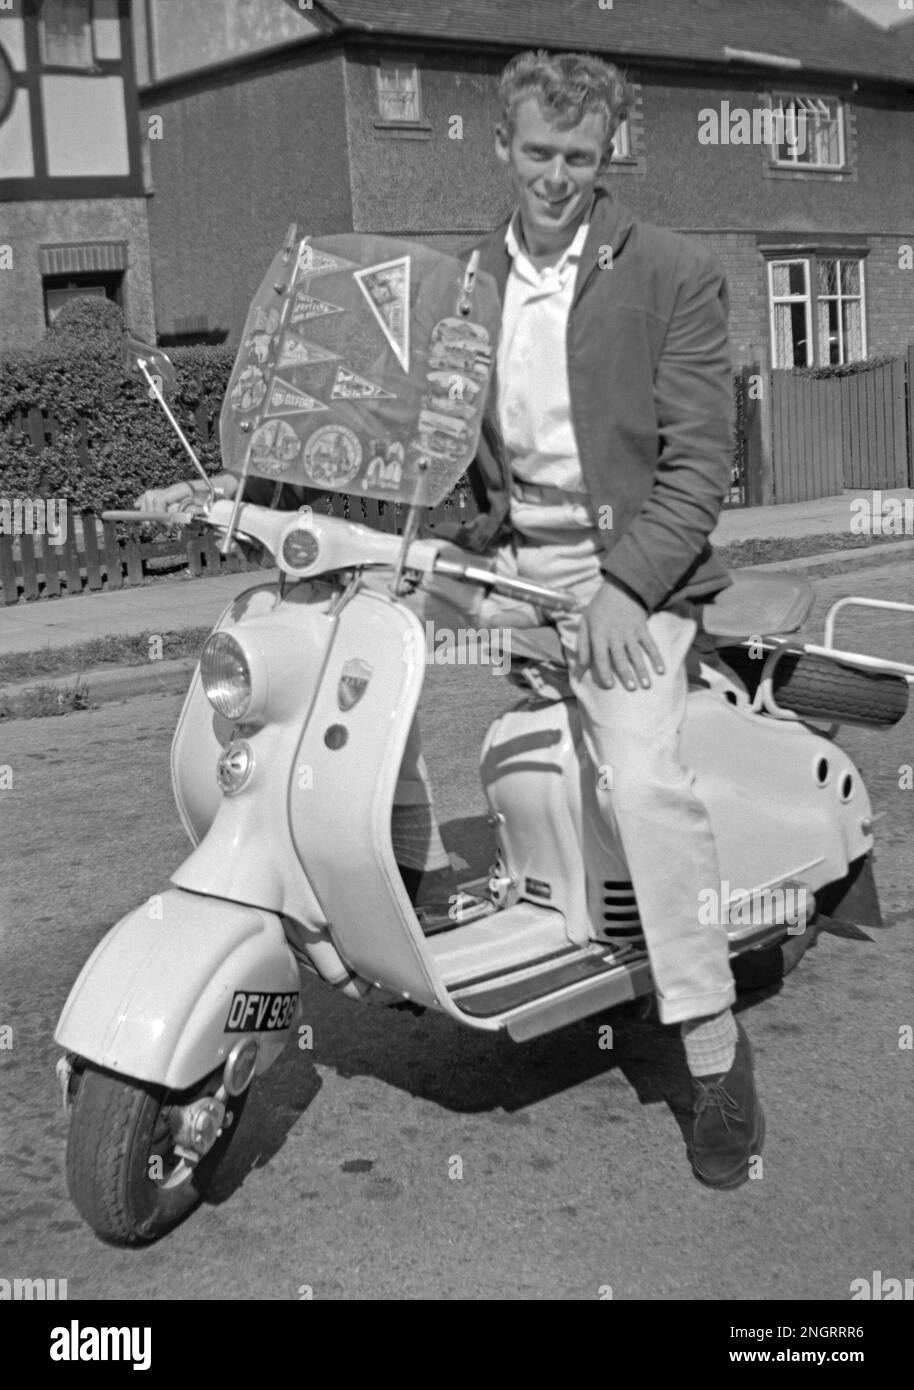 Ein modisch gekleideter junger Mann auf einem Lambretta Roller in Großbritannien Mitte der 1960er Jahre. Er trägt eine lässige Jacke, eine cremefarbene Hose mit Turnups und Wildlederschuhe. Orte, die der Roller besucht hat, werden als Wimpel auf der Windschutzscheibe angezeigt – darunter Paris und Oxford. Dieses klassische Foto aus der Zeit, als Roller zu einer „Mod“-Transportform mit Großbritanniens Jugendkultur wurden. Dieses Bild ist von einem alten Amateur-35mm-Negativ – ein klassisches 1960er-Foto. Stockfoto